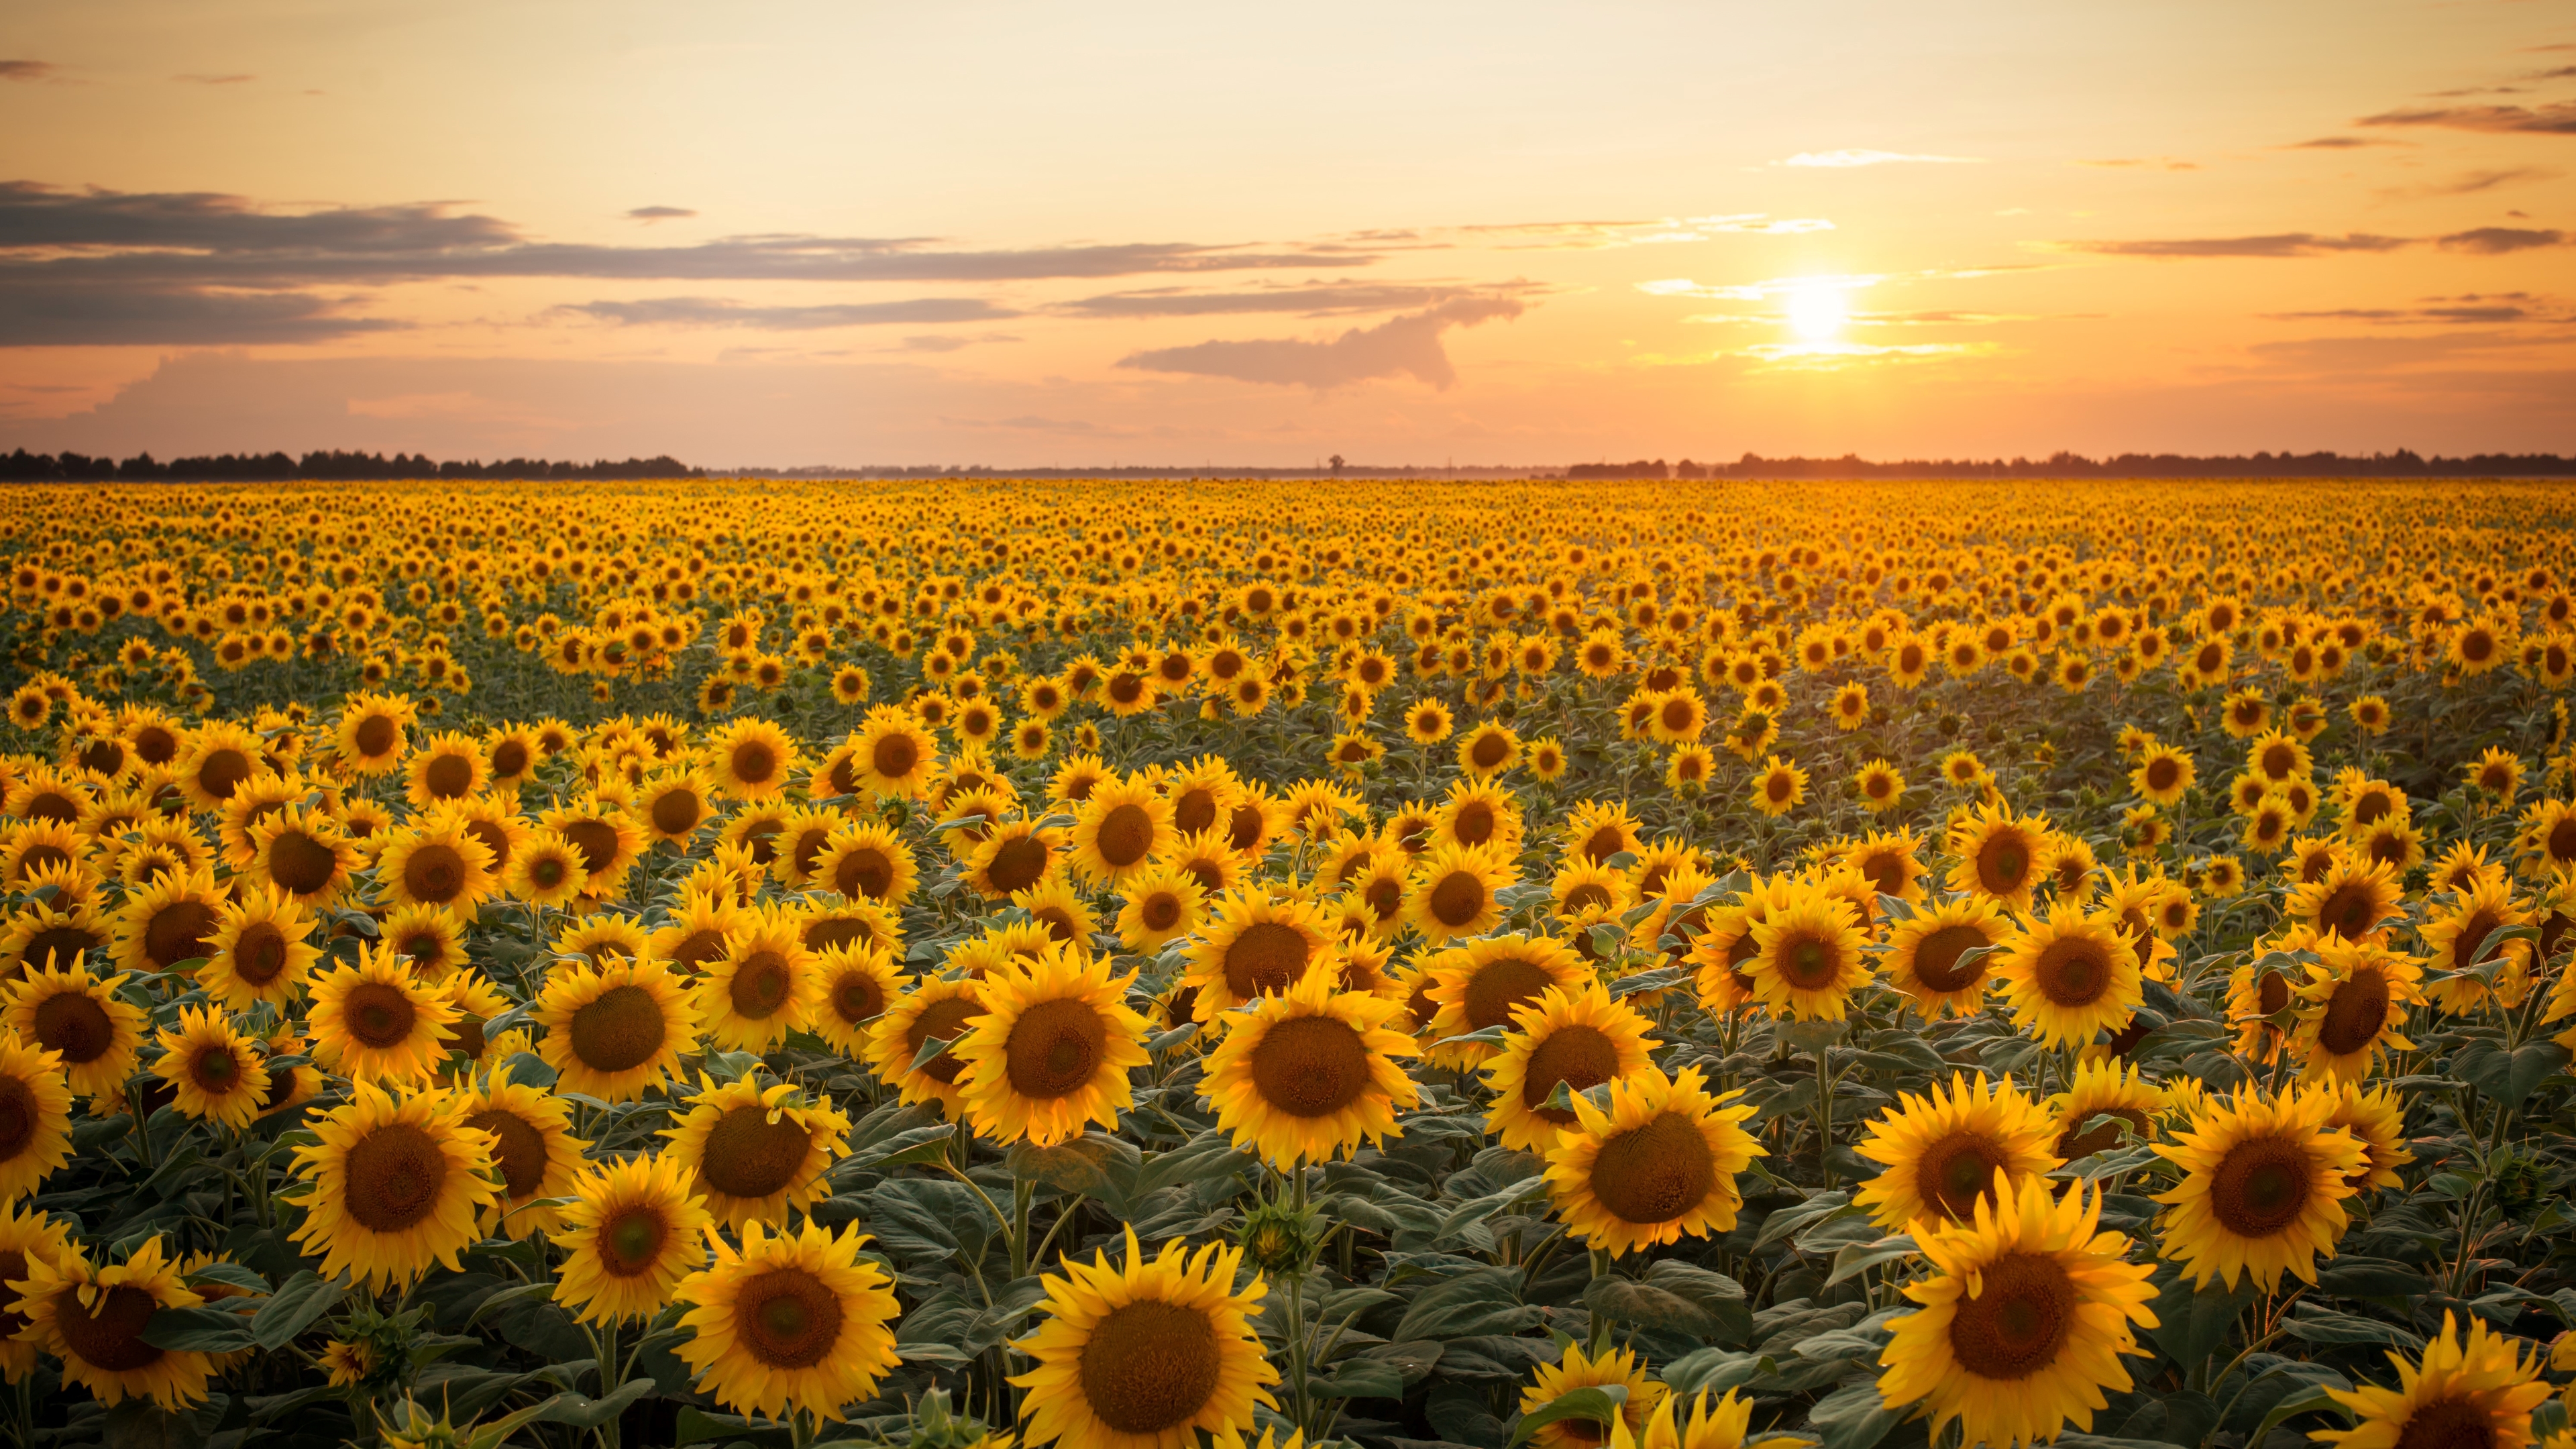 Sunflower 4k Ultra HD Wallpaper